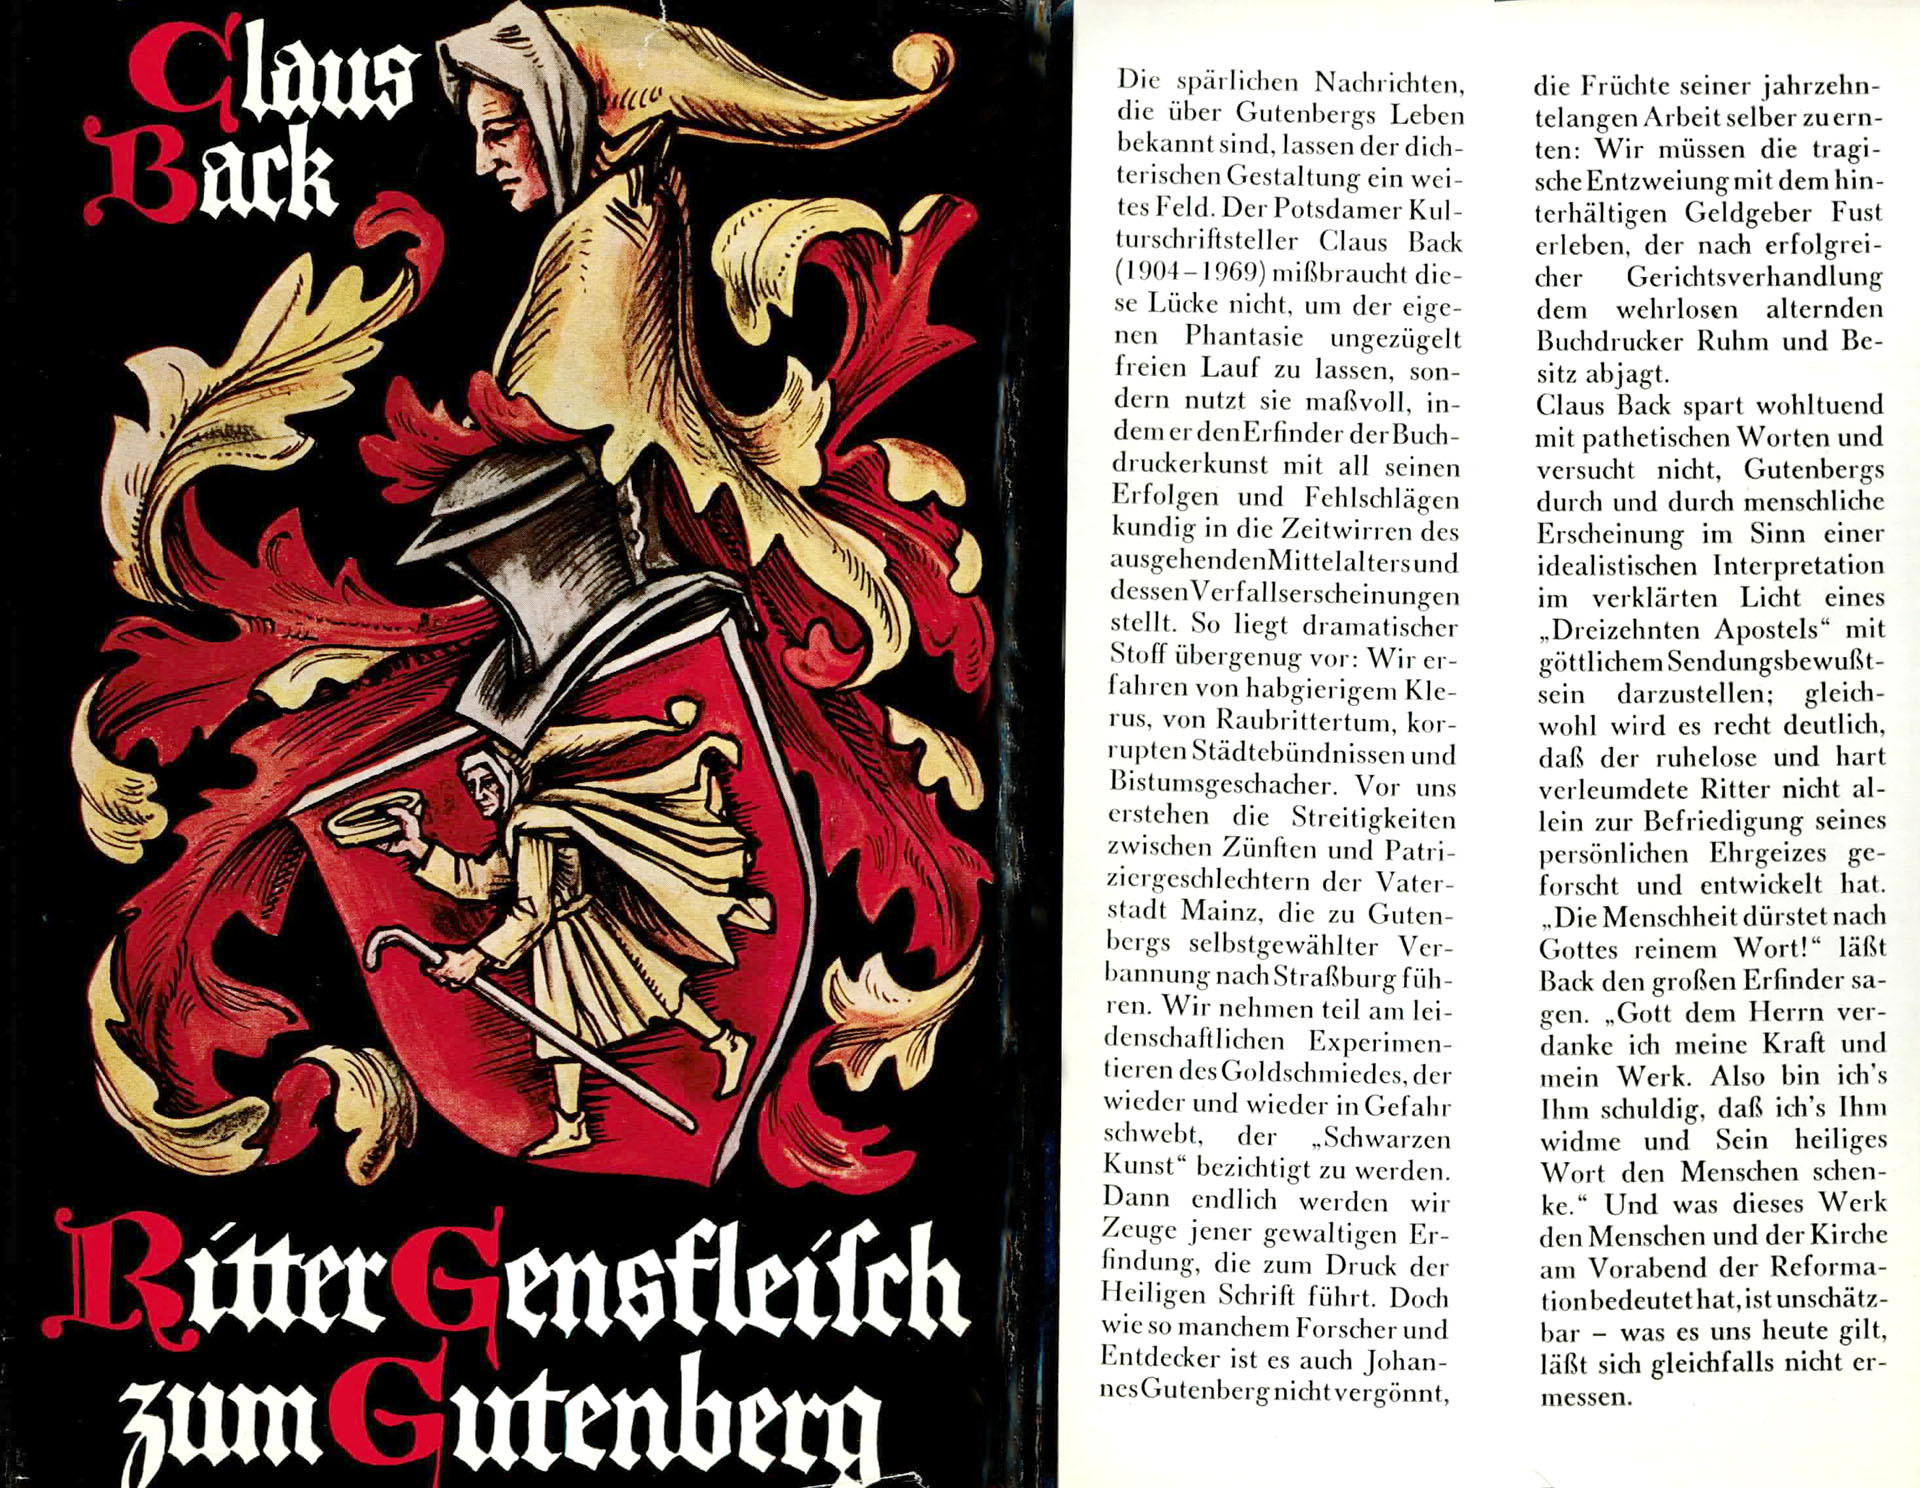 Ritter Gensfleisch zum Gutenberg - Back, Claus